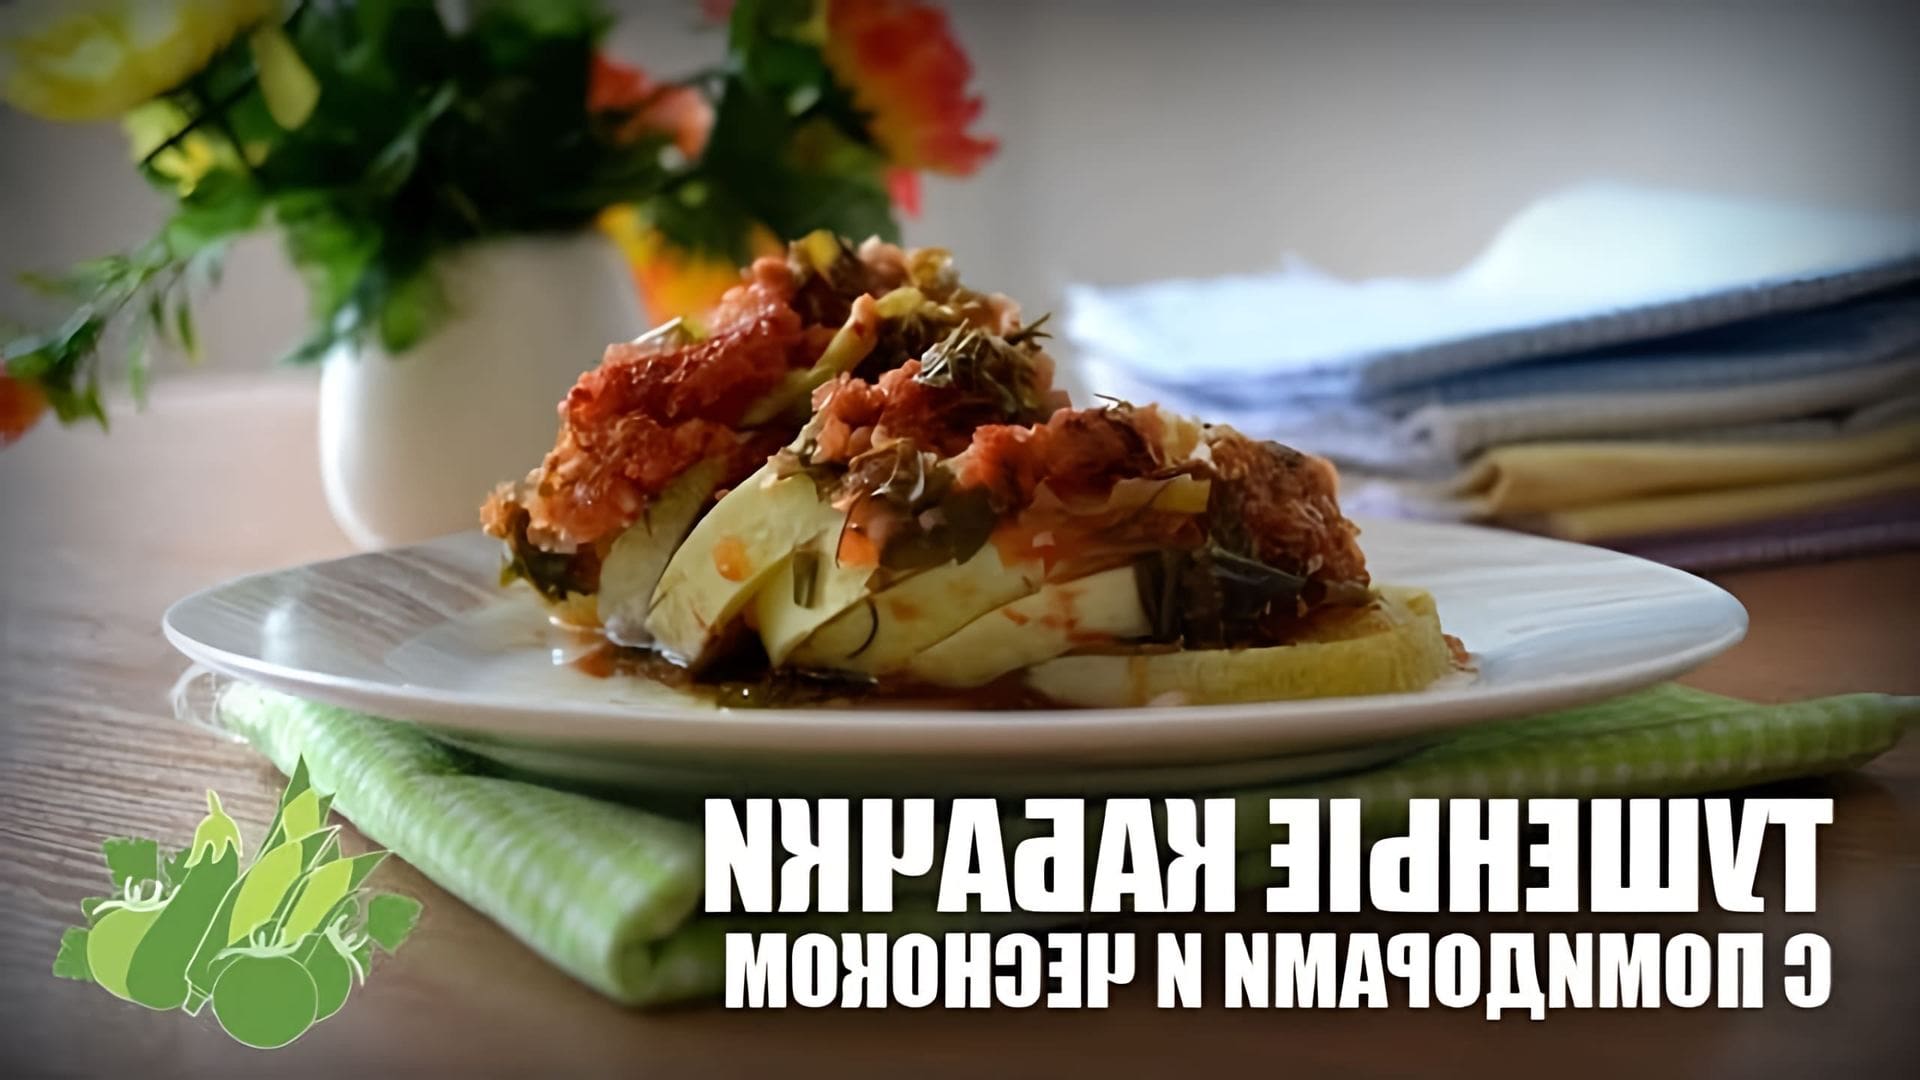 В этом видео демонстрируется рецепт приготовления тушеных кабачков с помидорами и чесноком